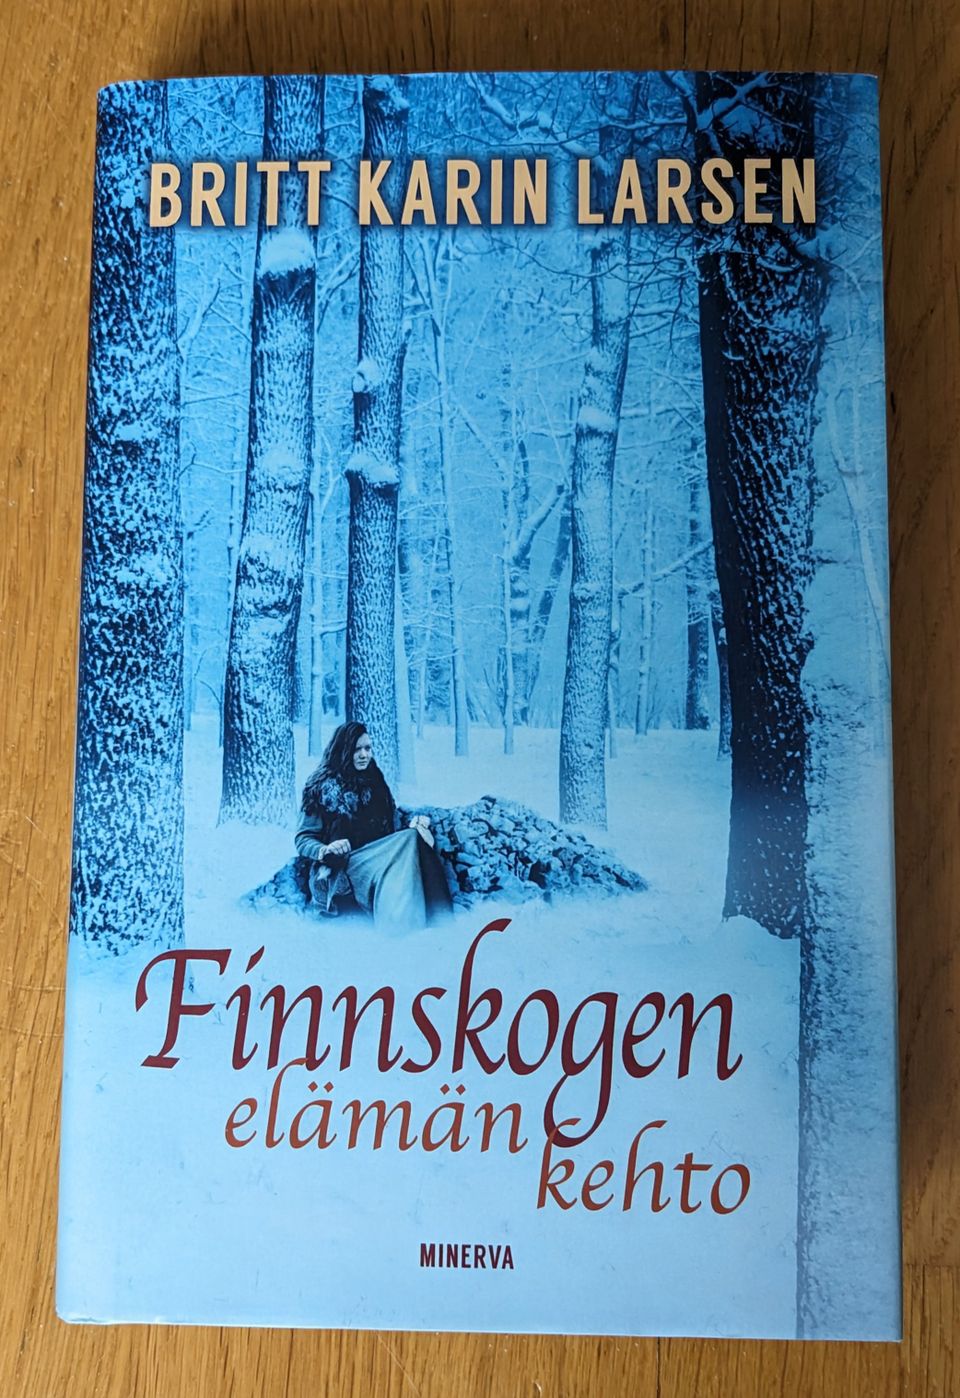 Finnskogen, elämän kehto, Britt Karin Larsen